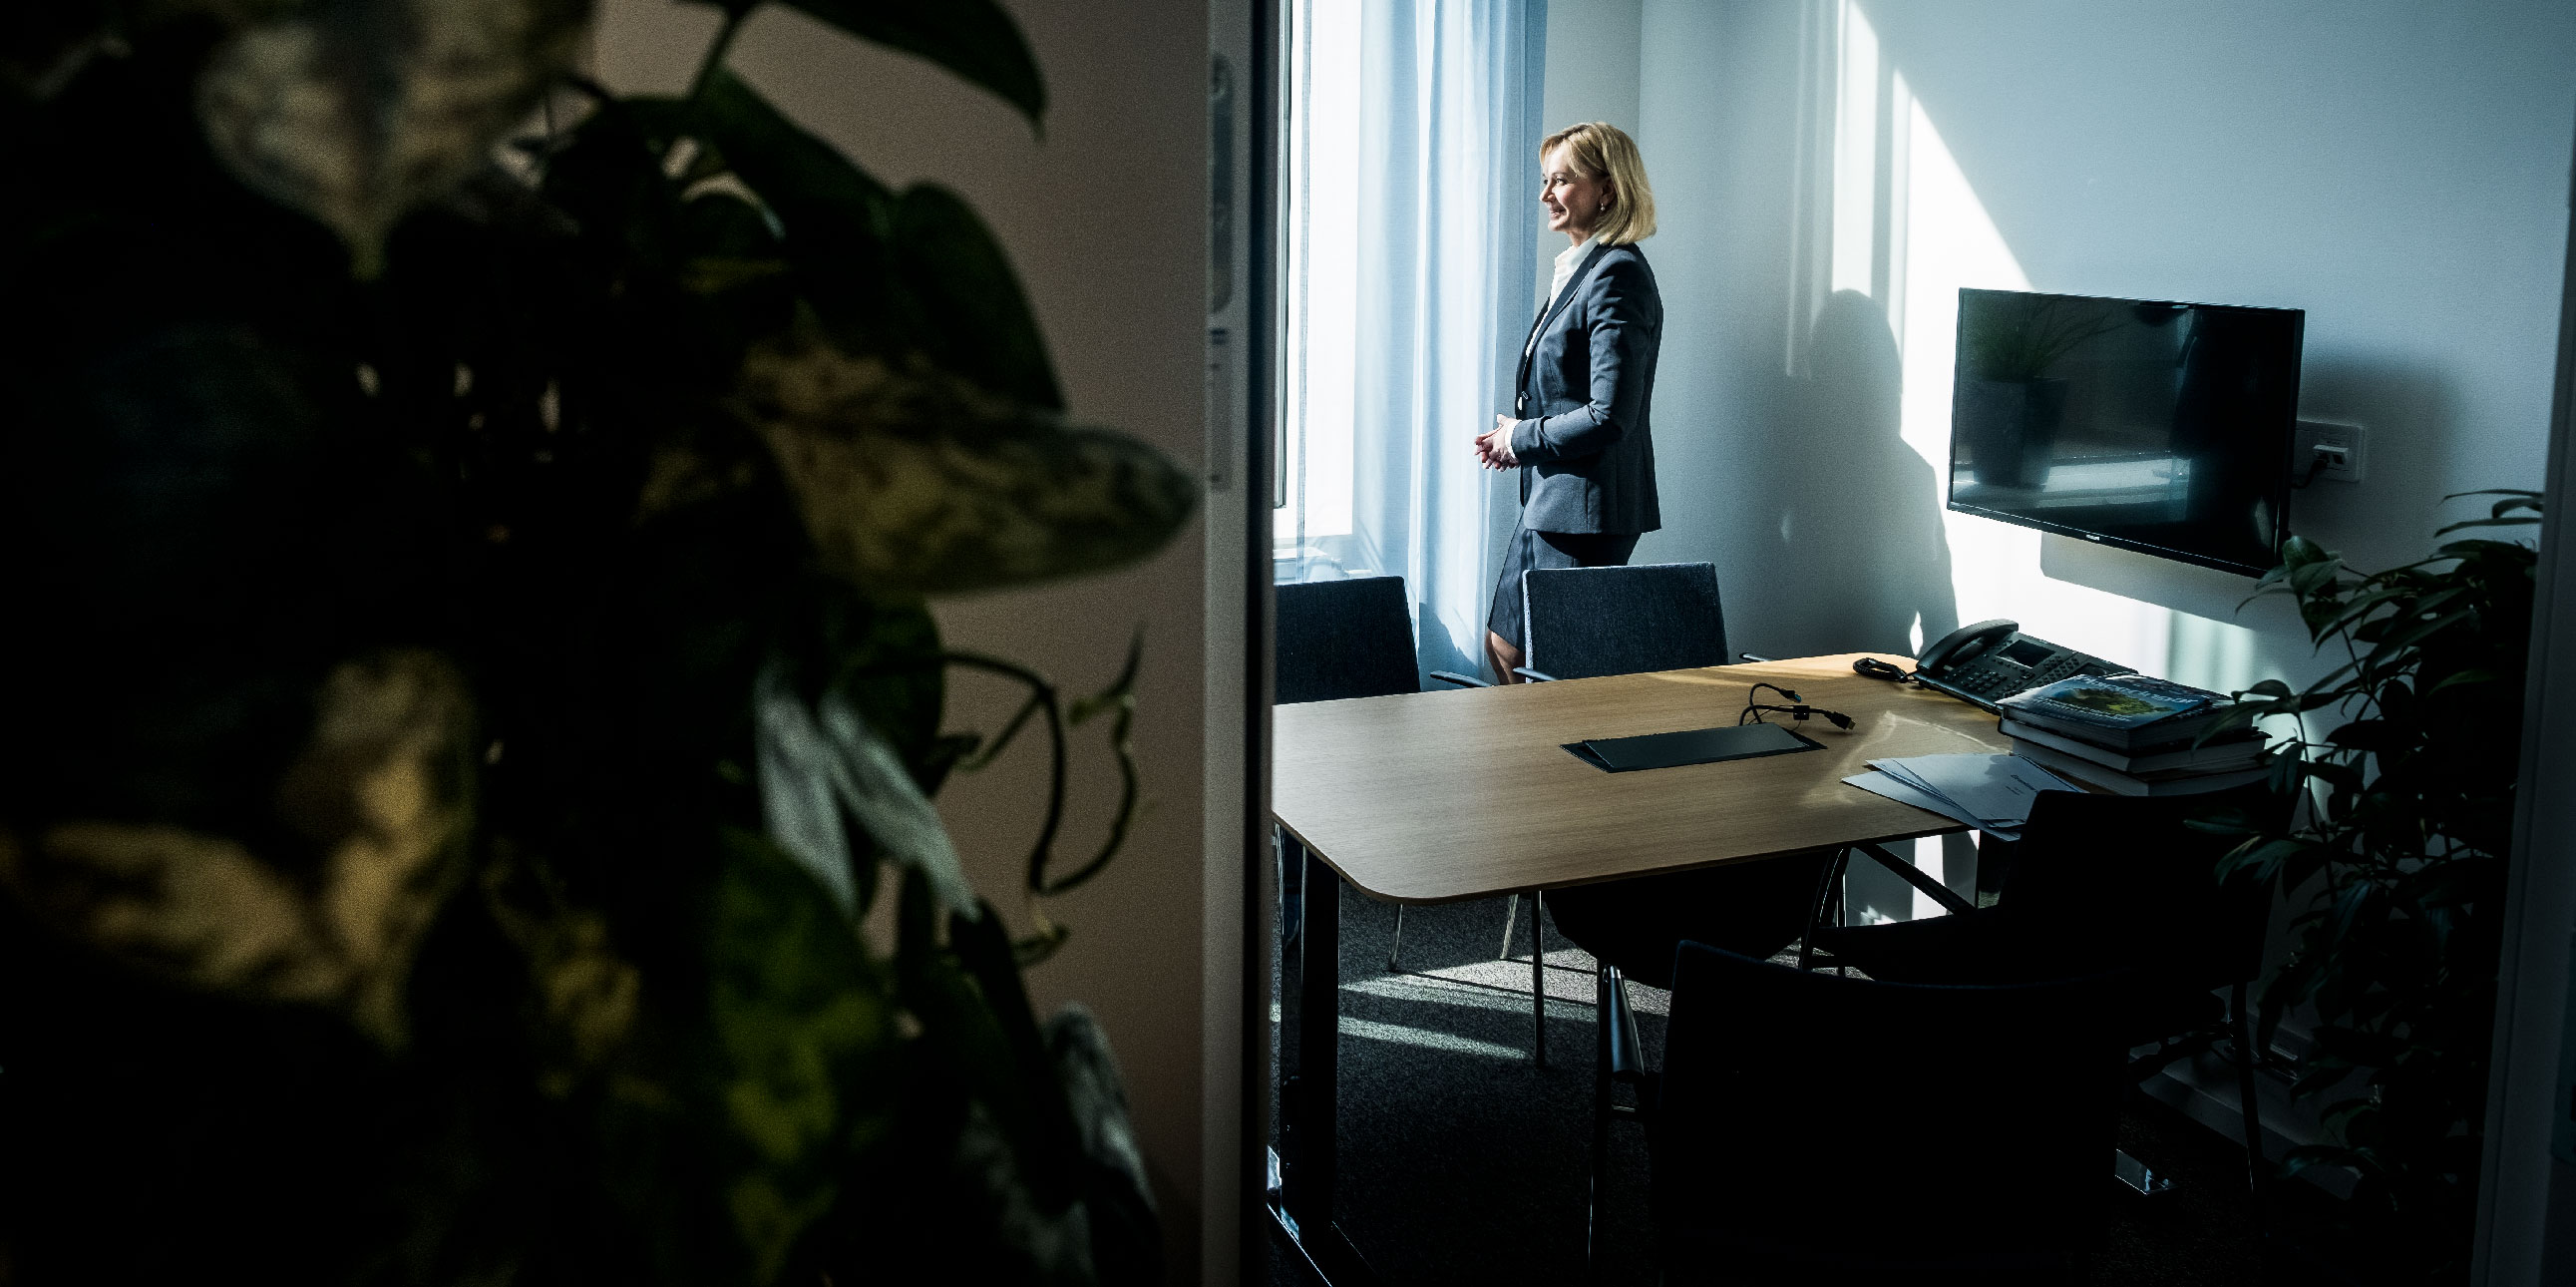 Att jobba under någon som tidigare har innehaft samma post ser inte ut som ett drömupplägg. Men enligt dem som har insyn fungerar samarbetet bra mellan Carina Åkerström och Handelsbankens styrelseordförande, Pär Boman.